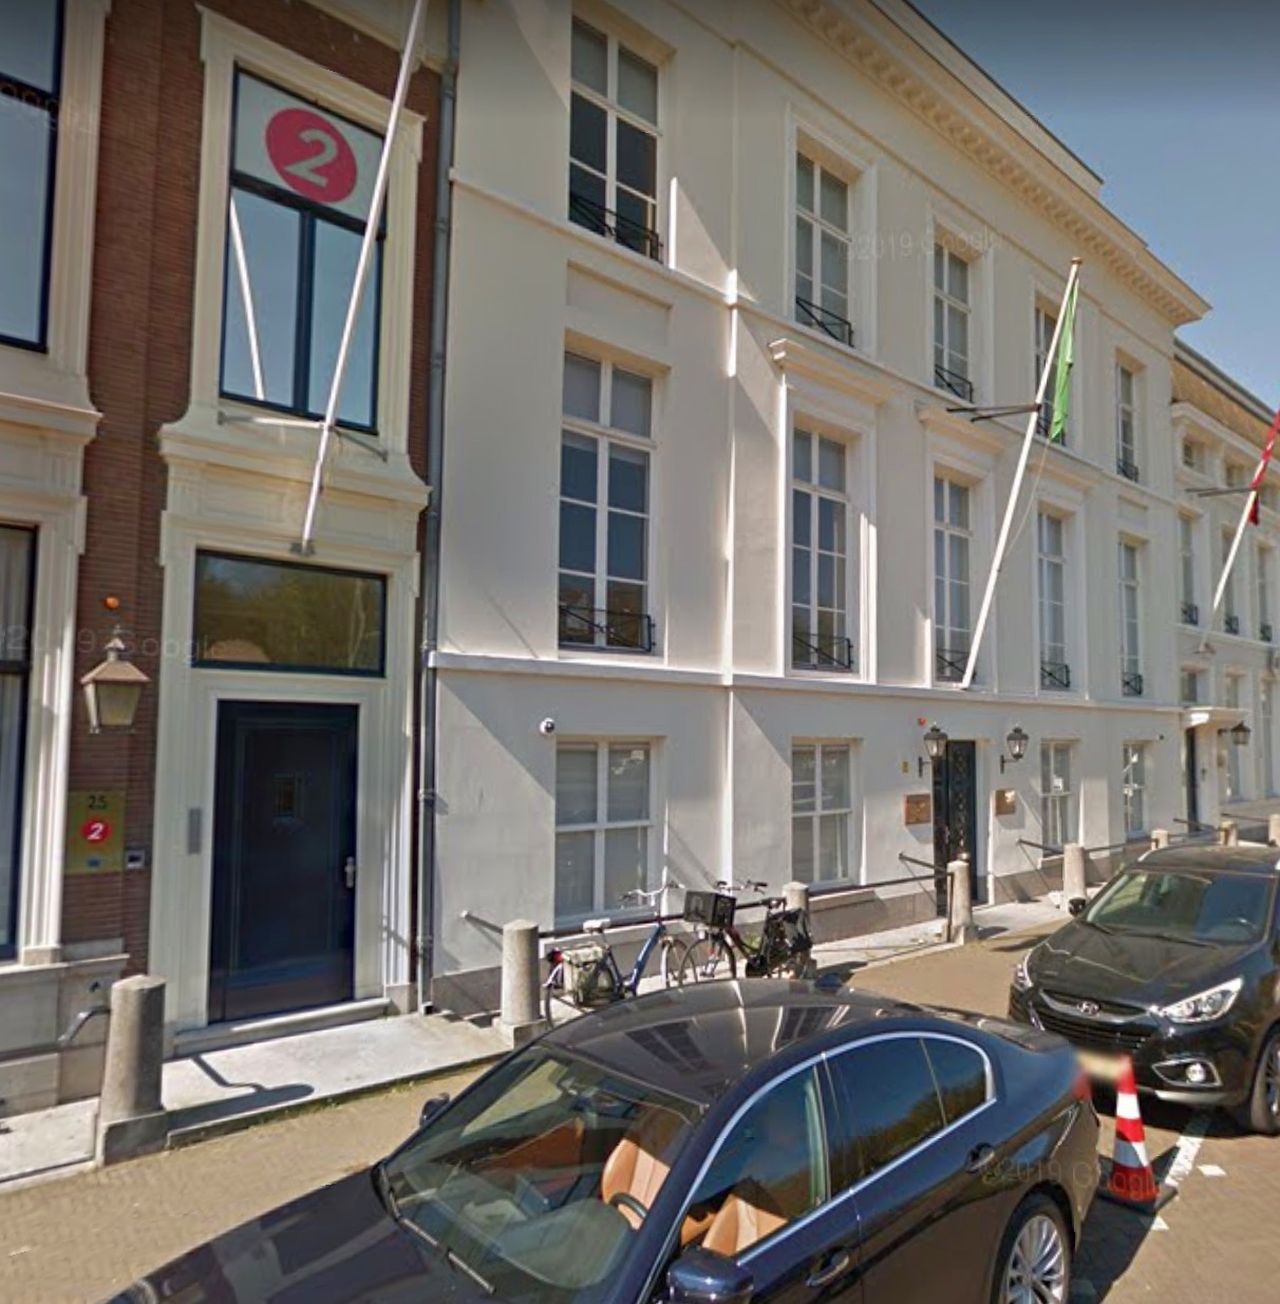 Terrorismo: Olanda, spari contro l'ambasciata dell'Arabia Saudita